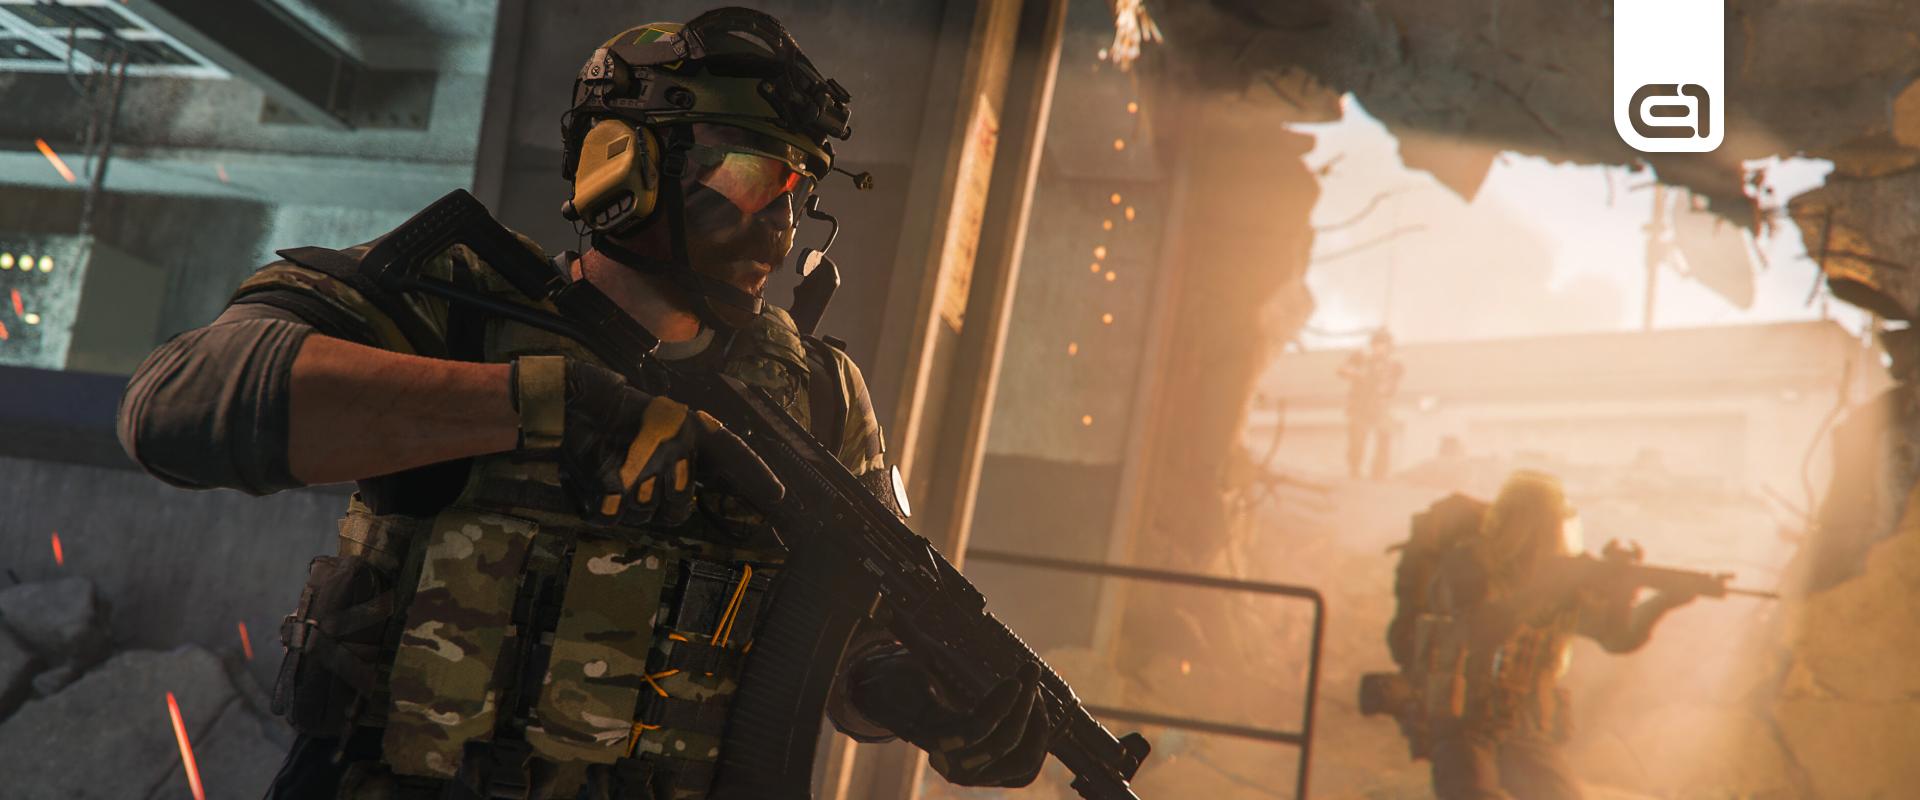 Hallucinációkkal harcol a Call of Duty a csalók ellen